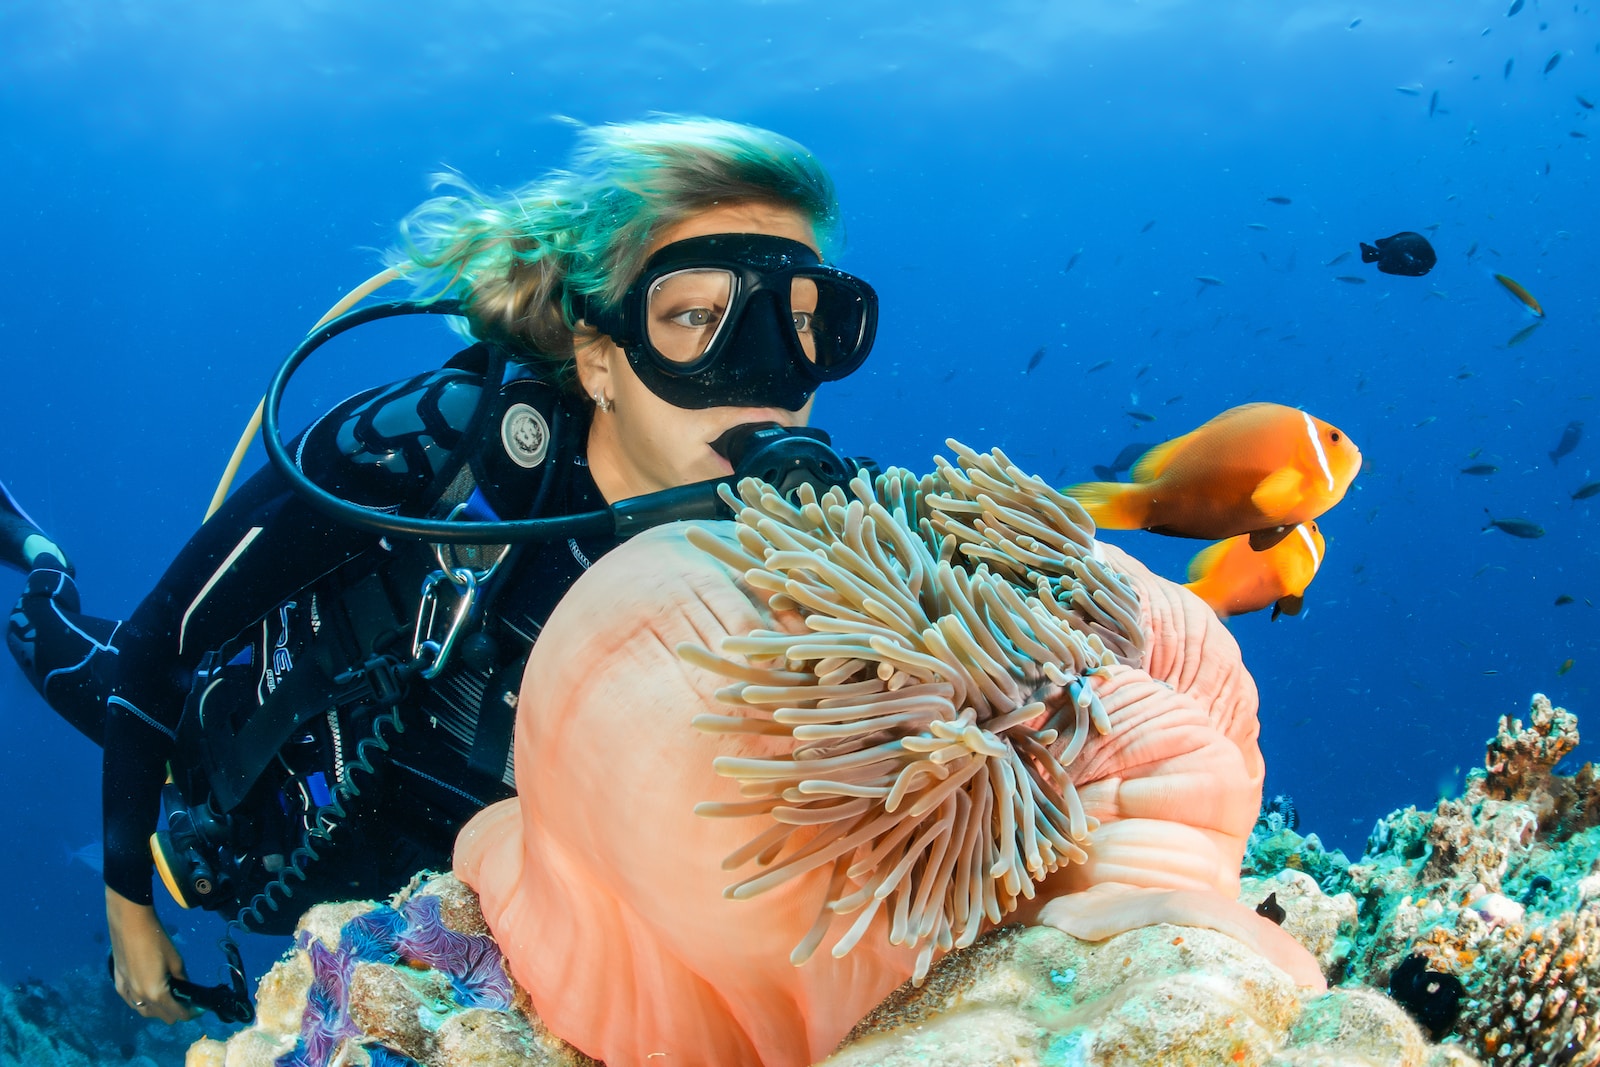 female diver near sea sponge during daytime